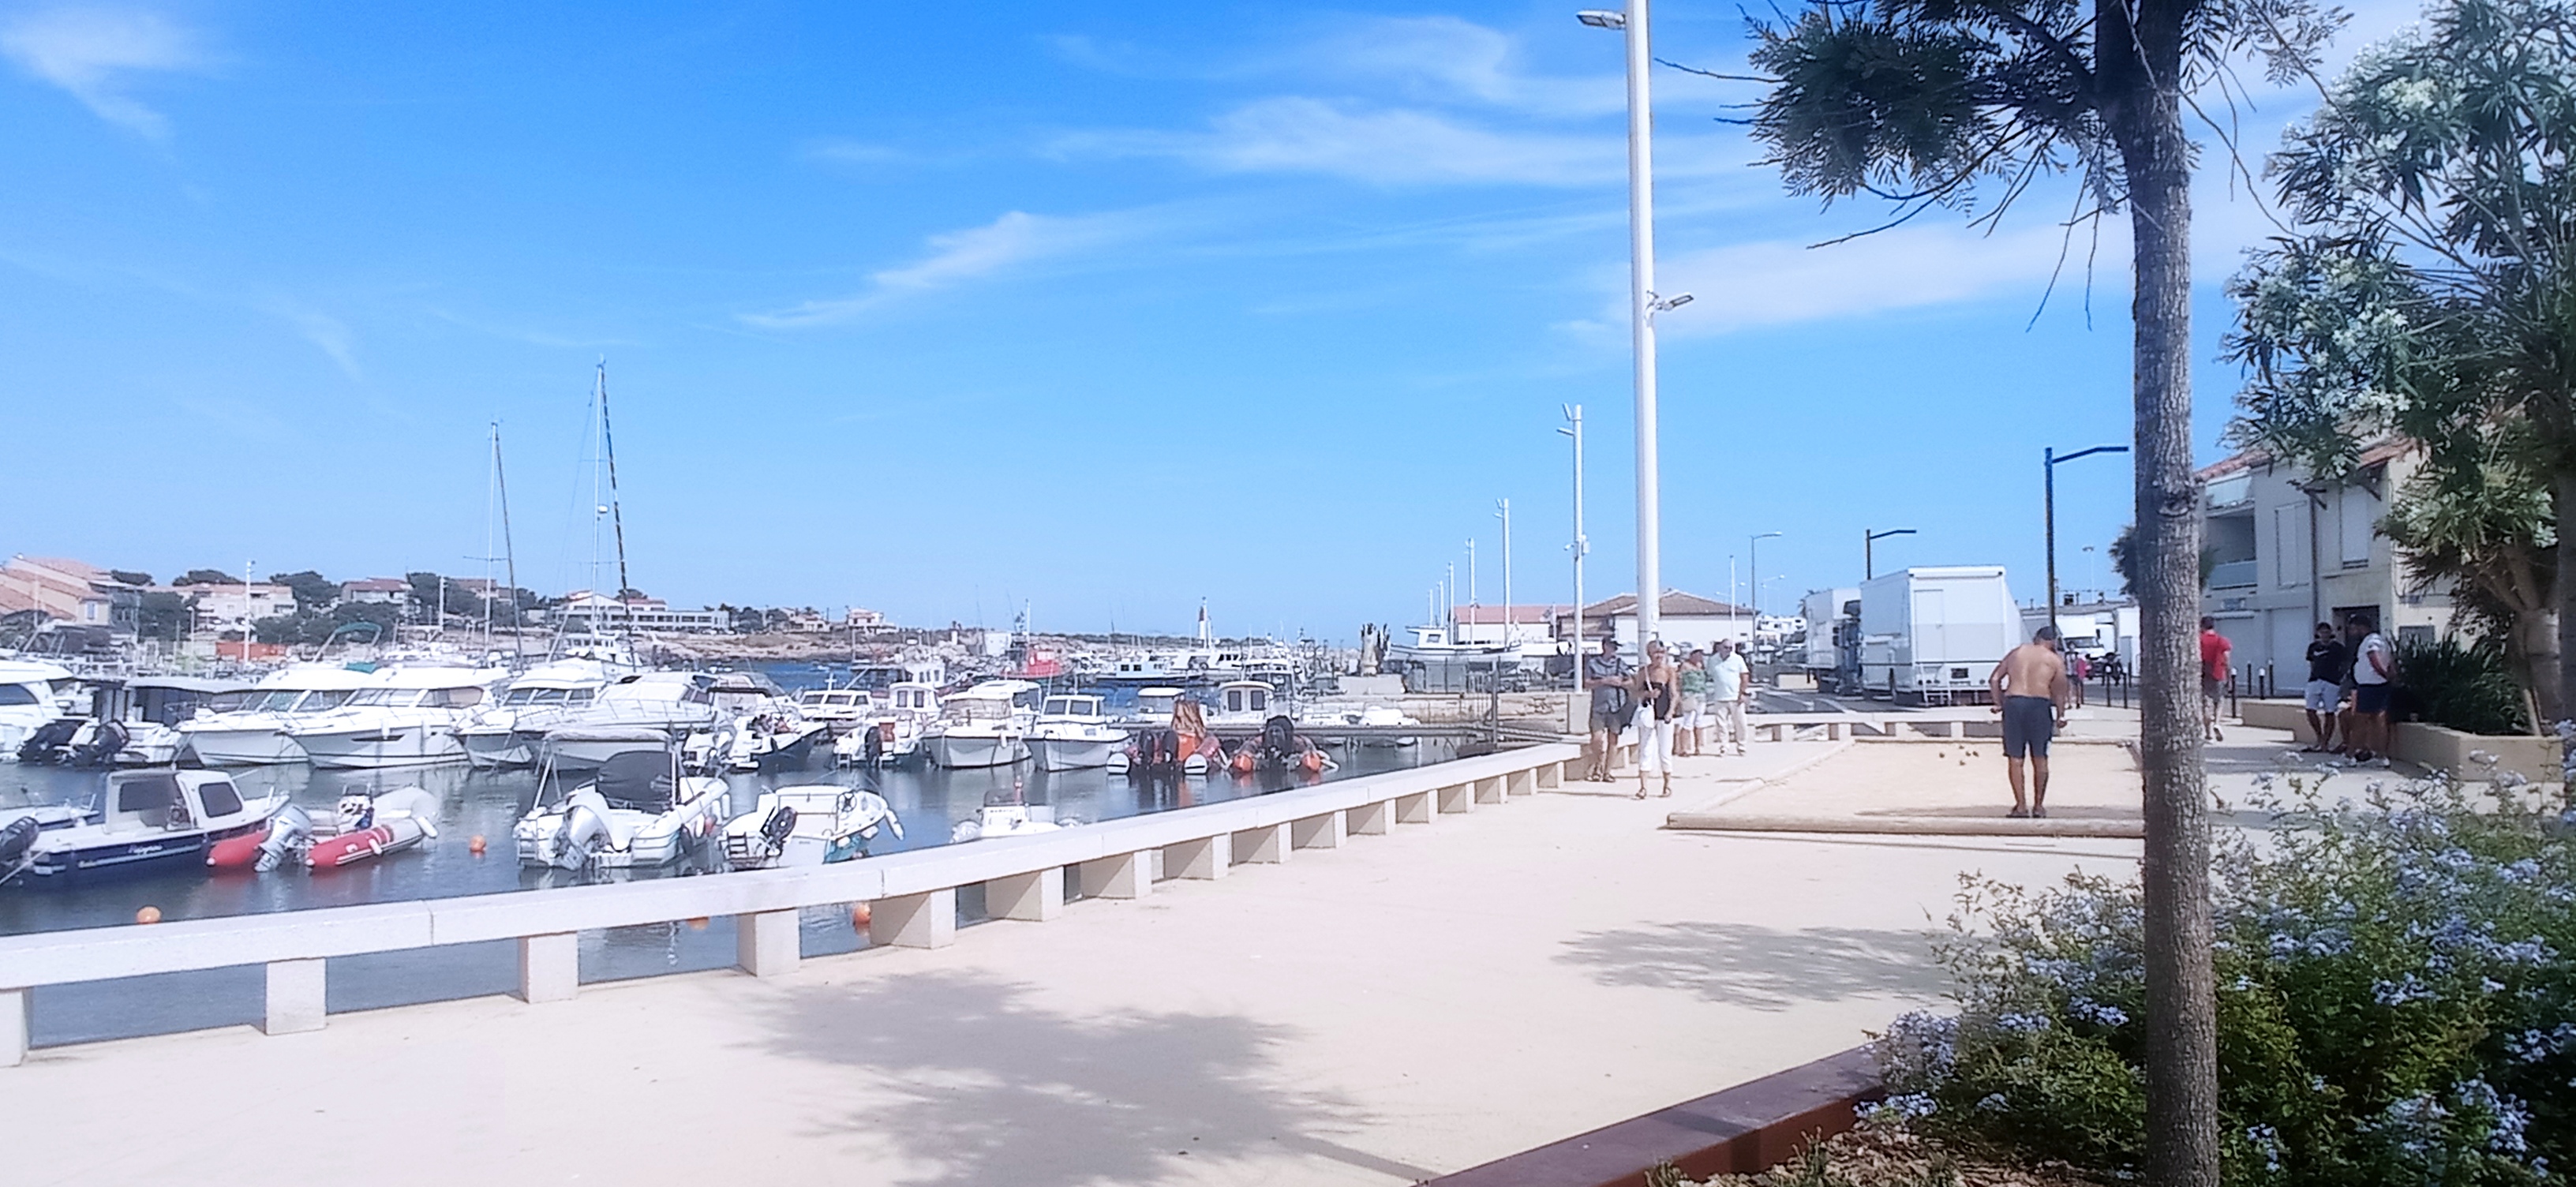 Le port de Carro et son boulodrome, Martigues - © Otmartigues / MyriamF